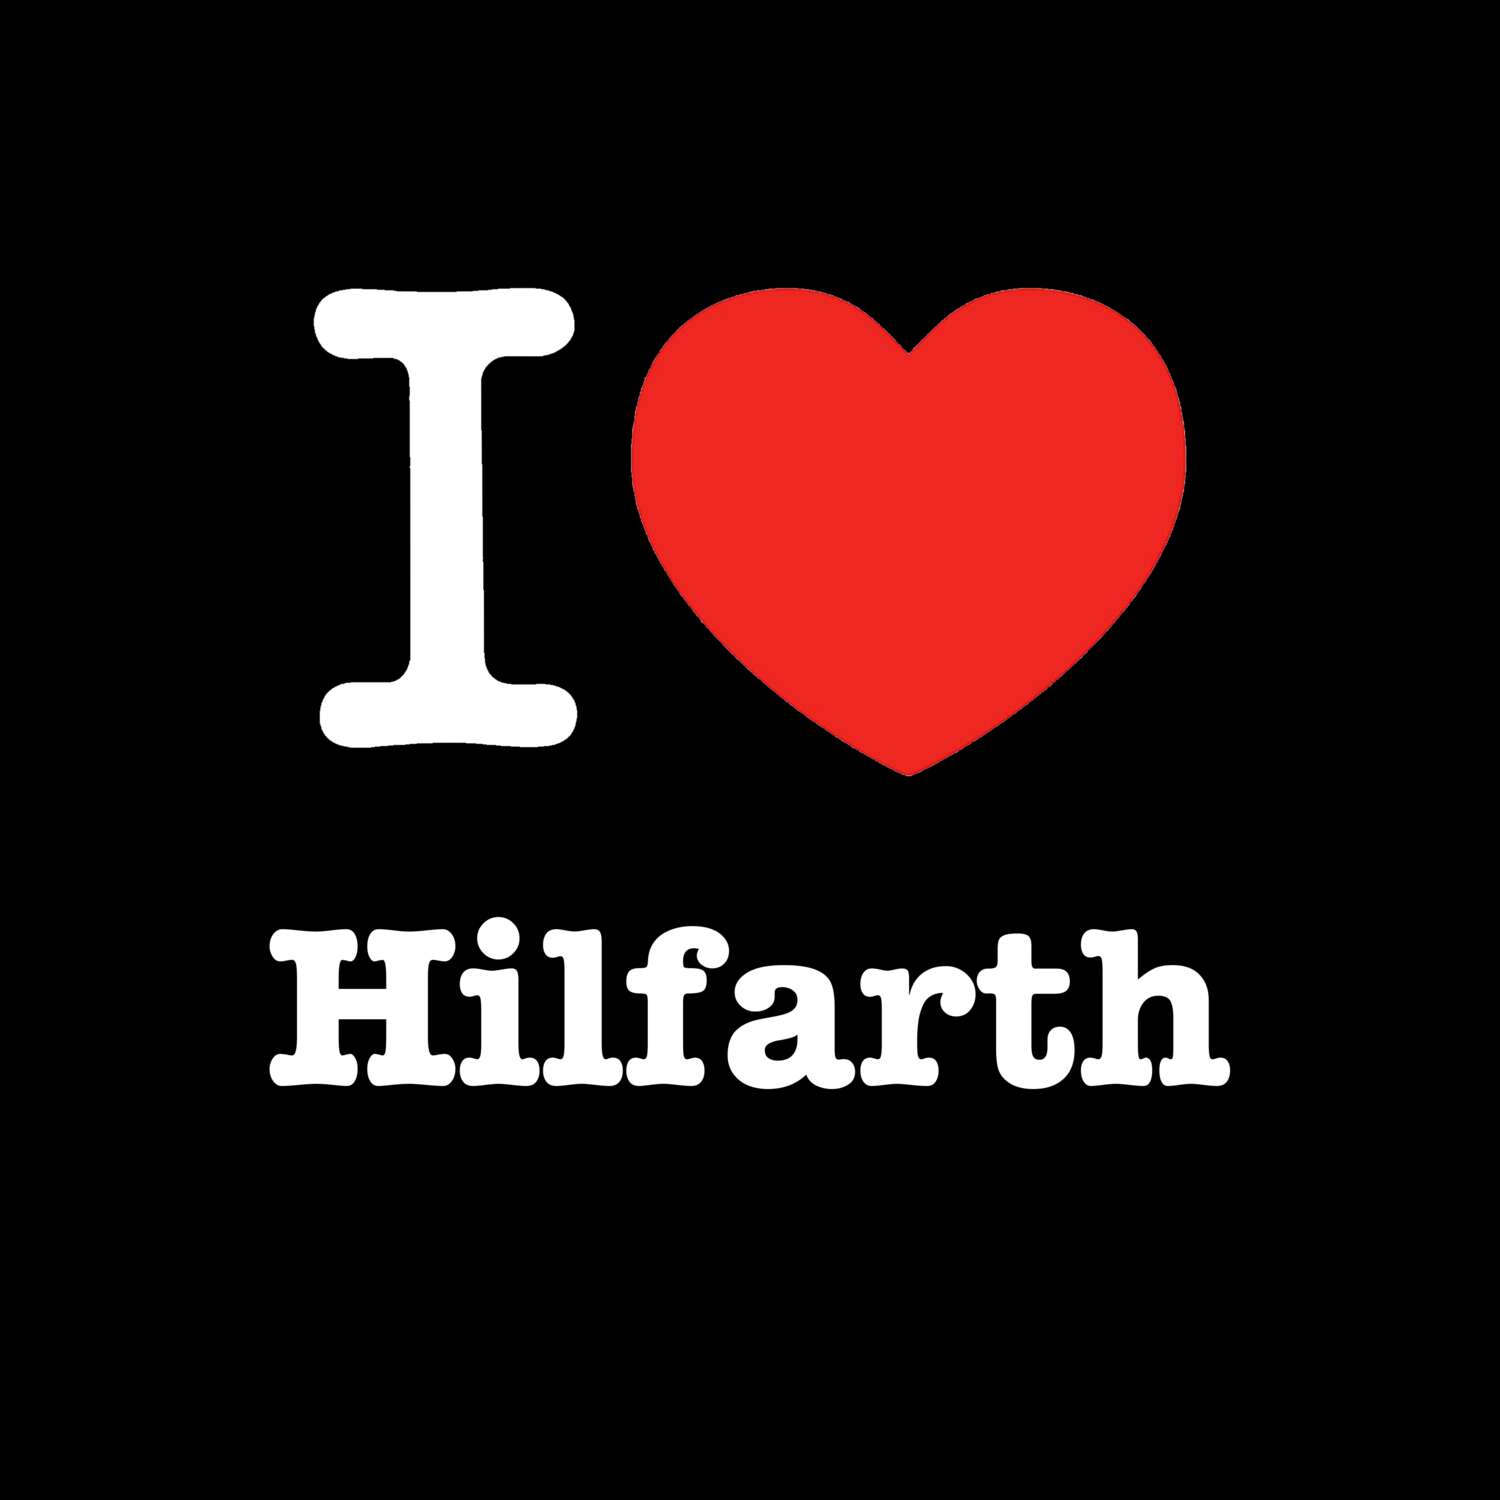 Hilfarth T-Shirt »I love«